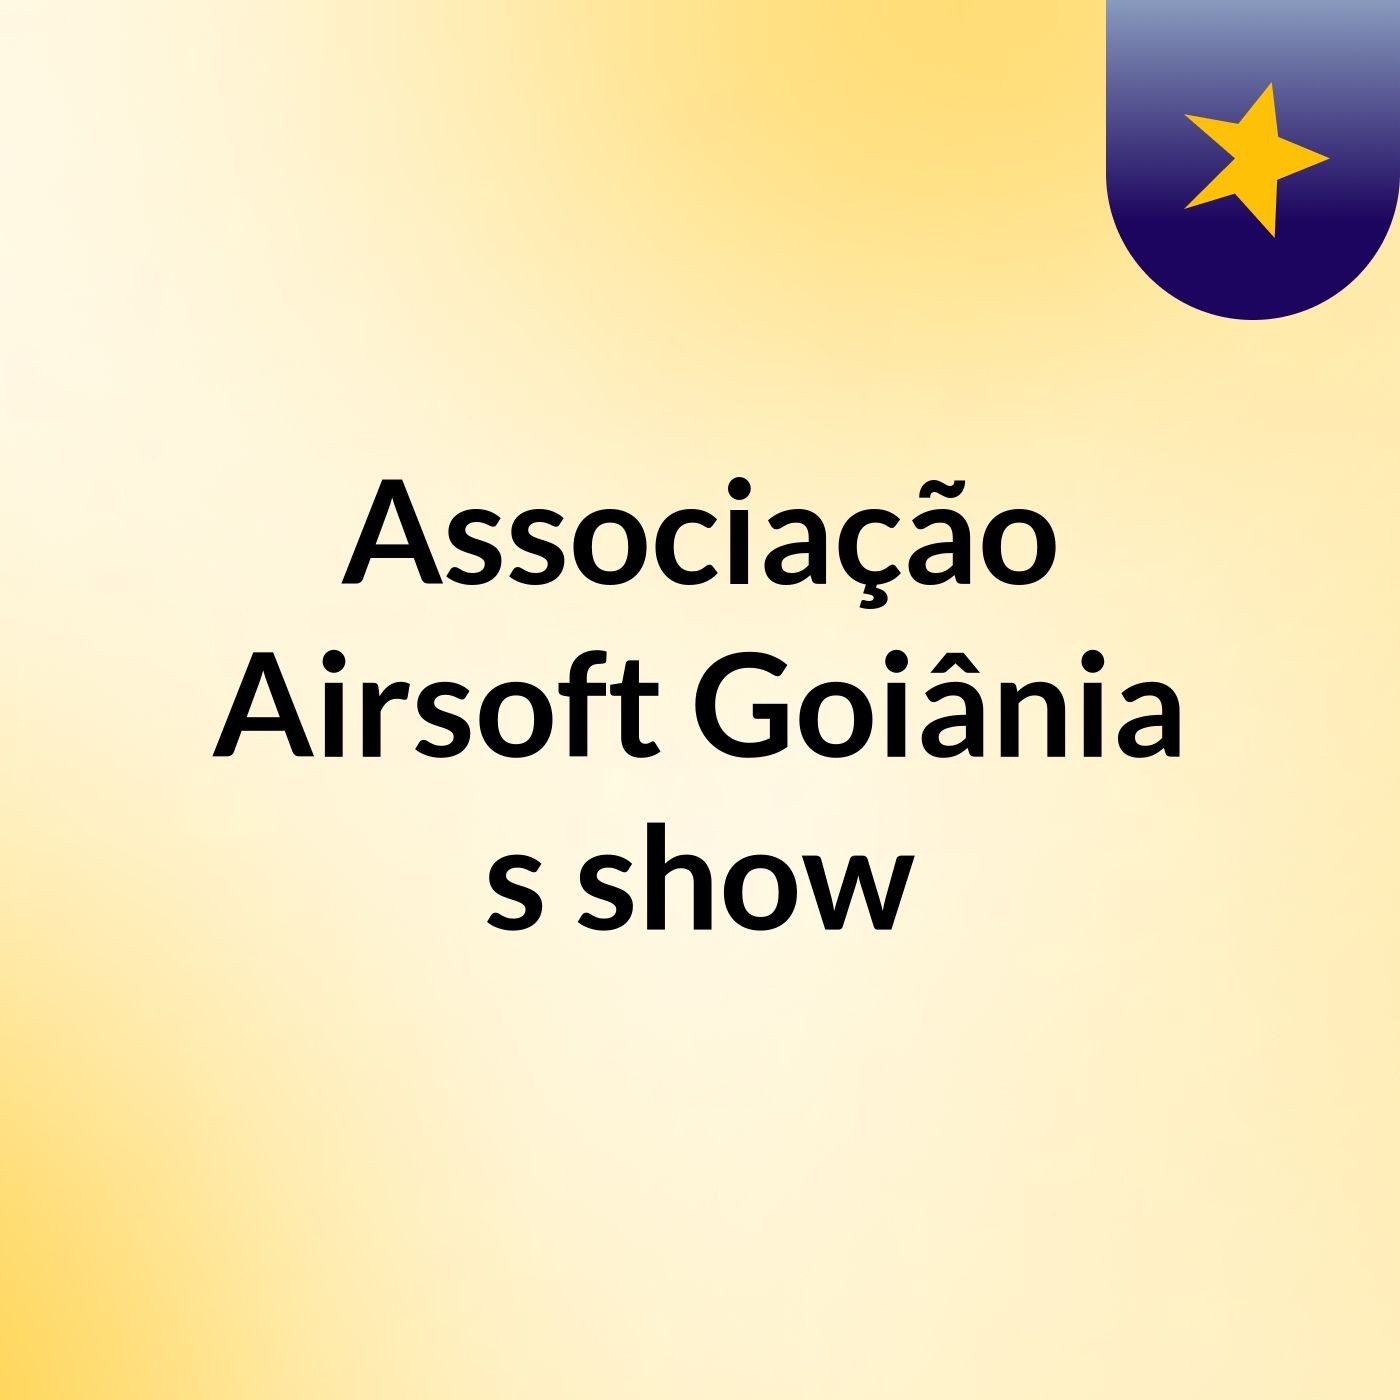 Associação Airsoft Goiânia's show